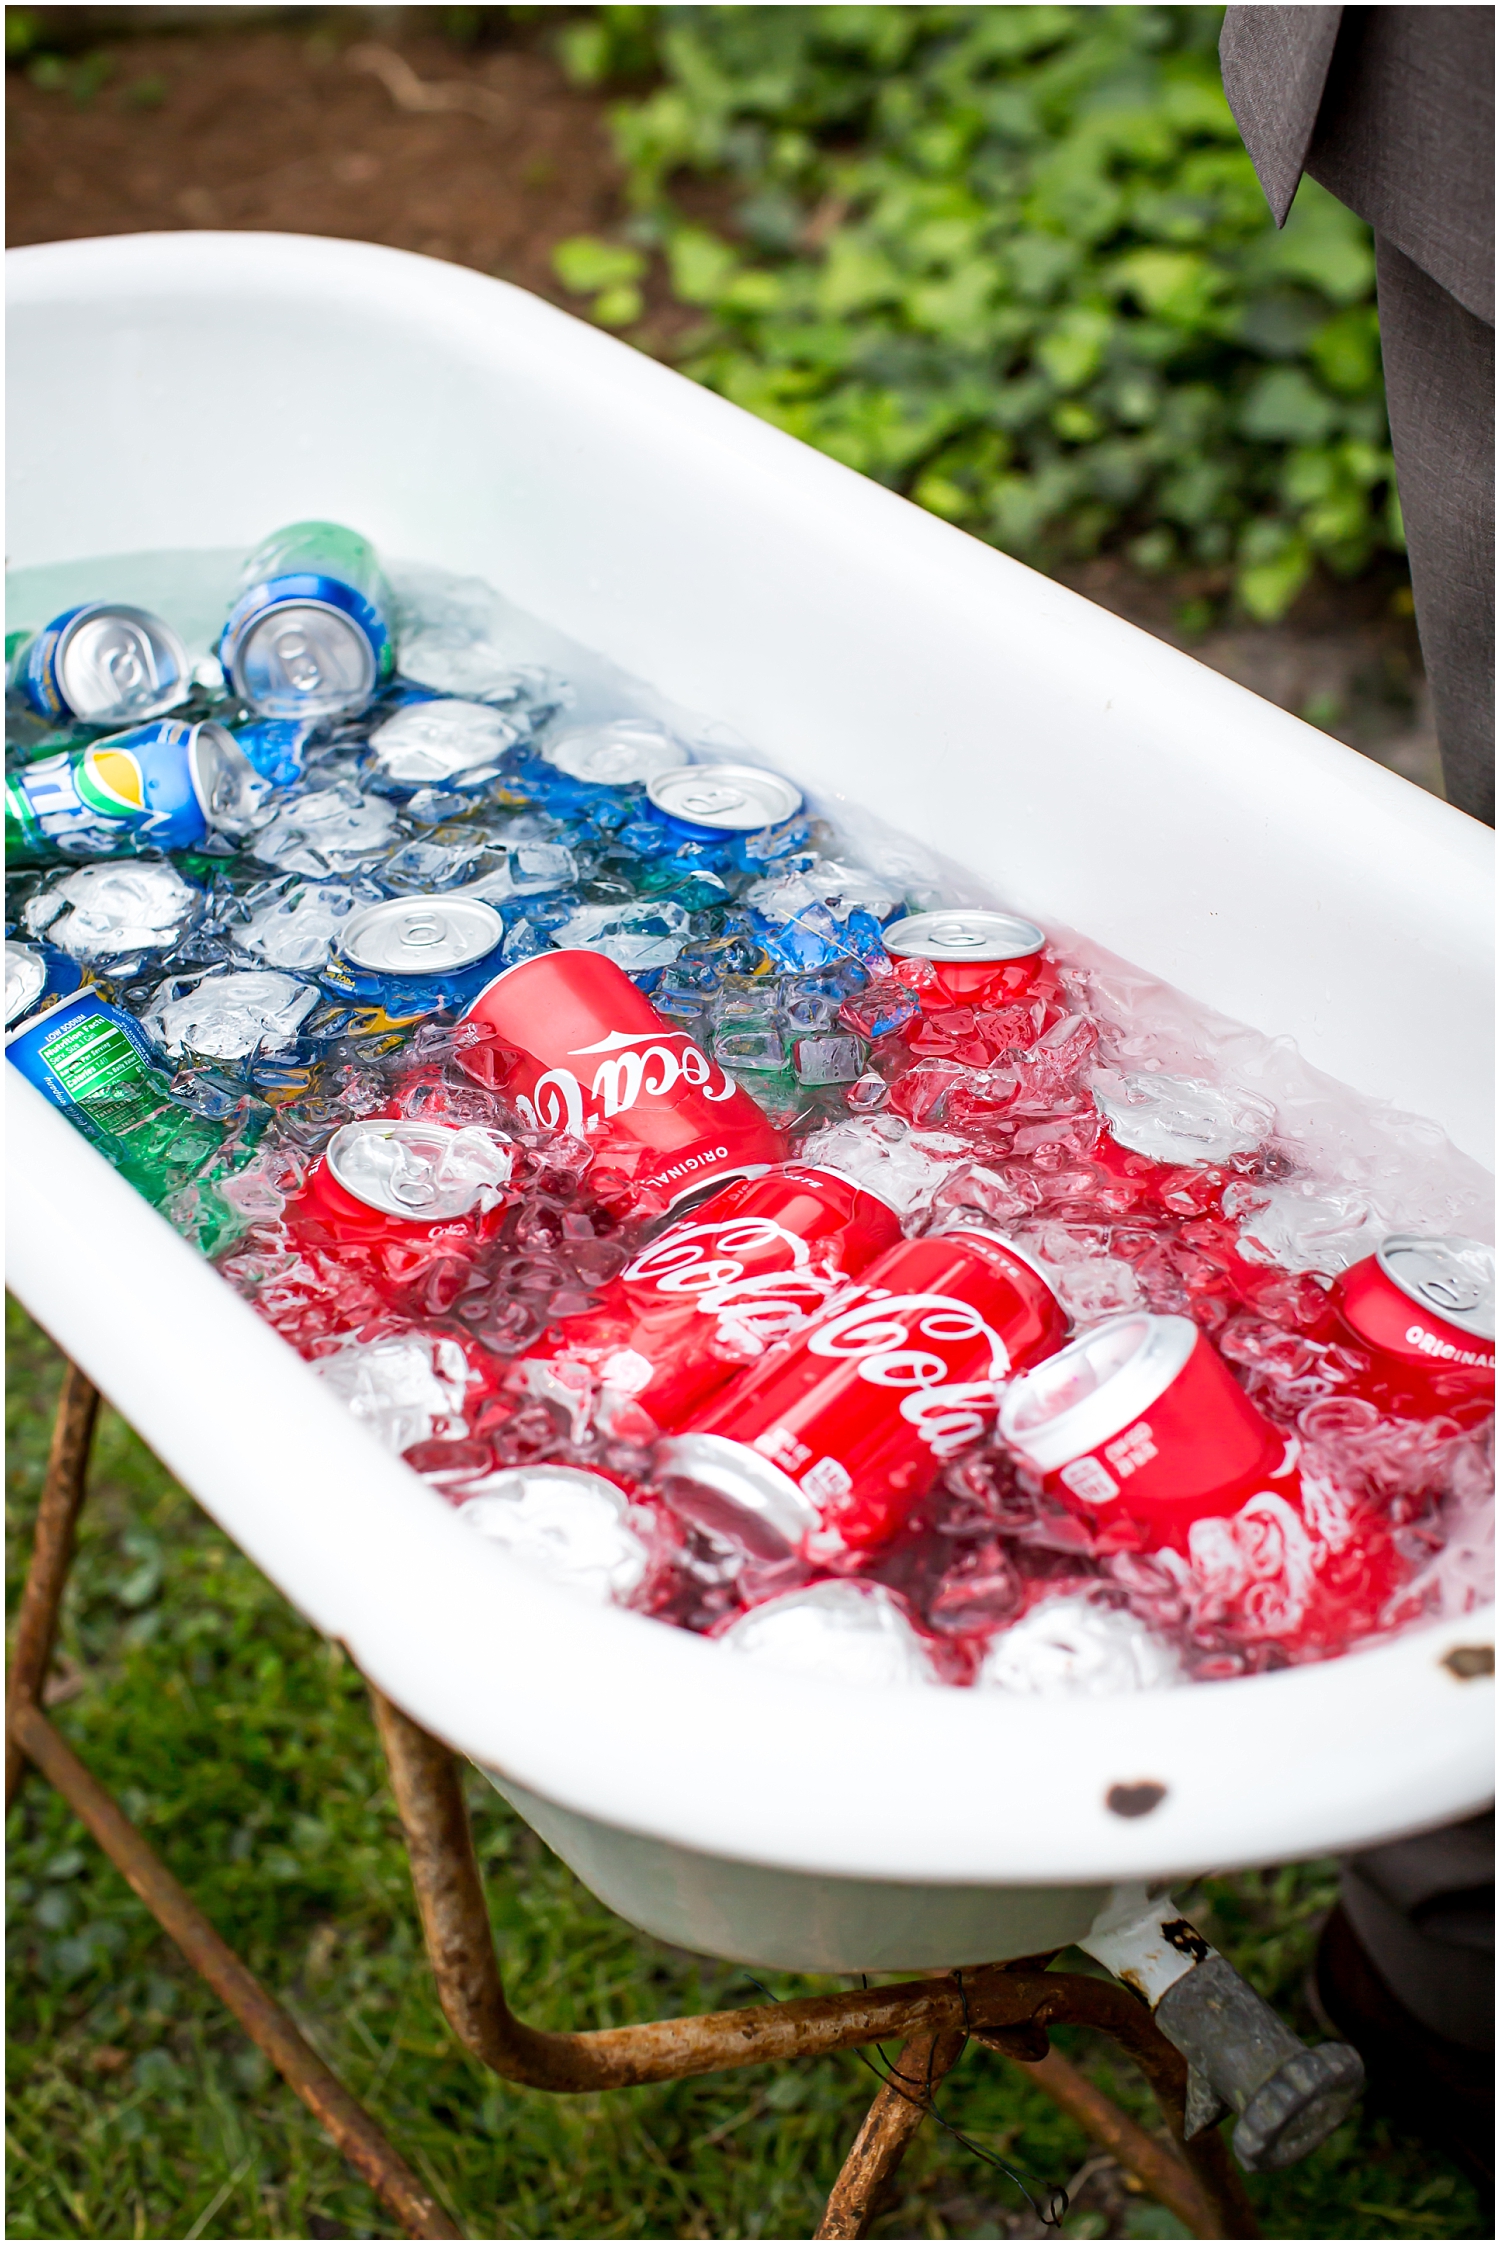  bath tub filled with soda cans 